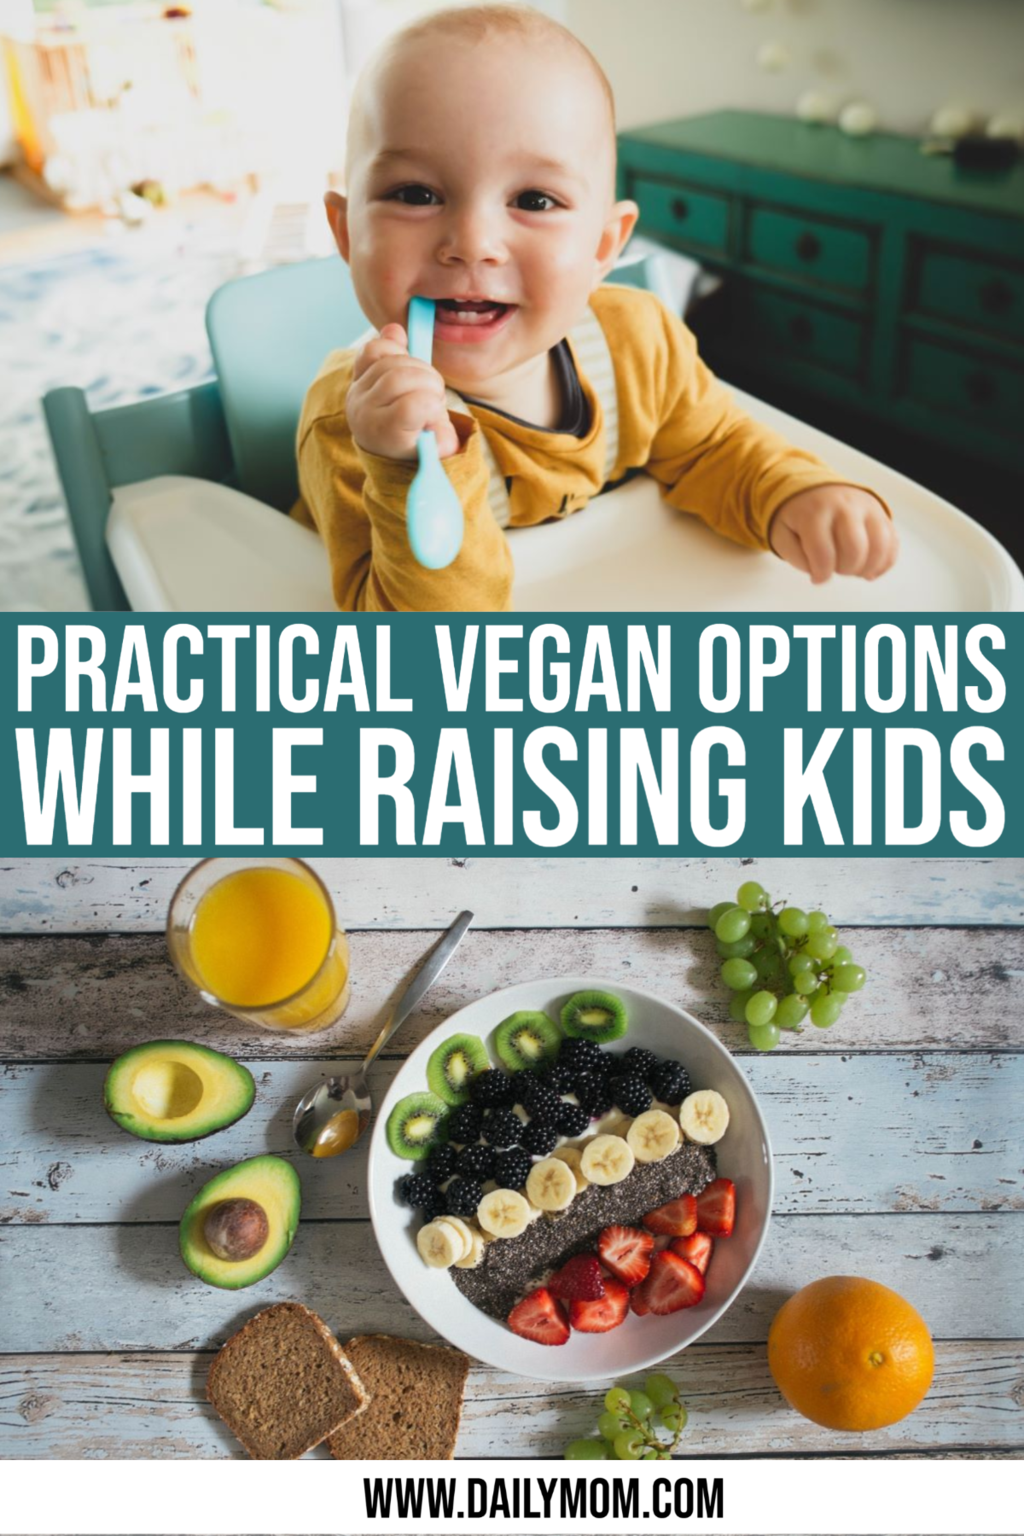 4 Inspiring Vegan Options To Consider While Raising Kids